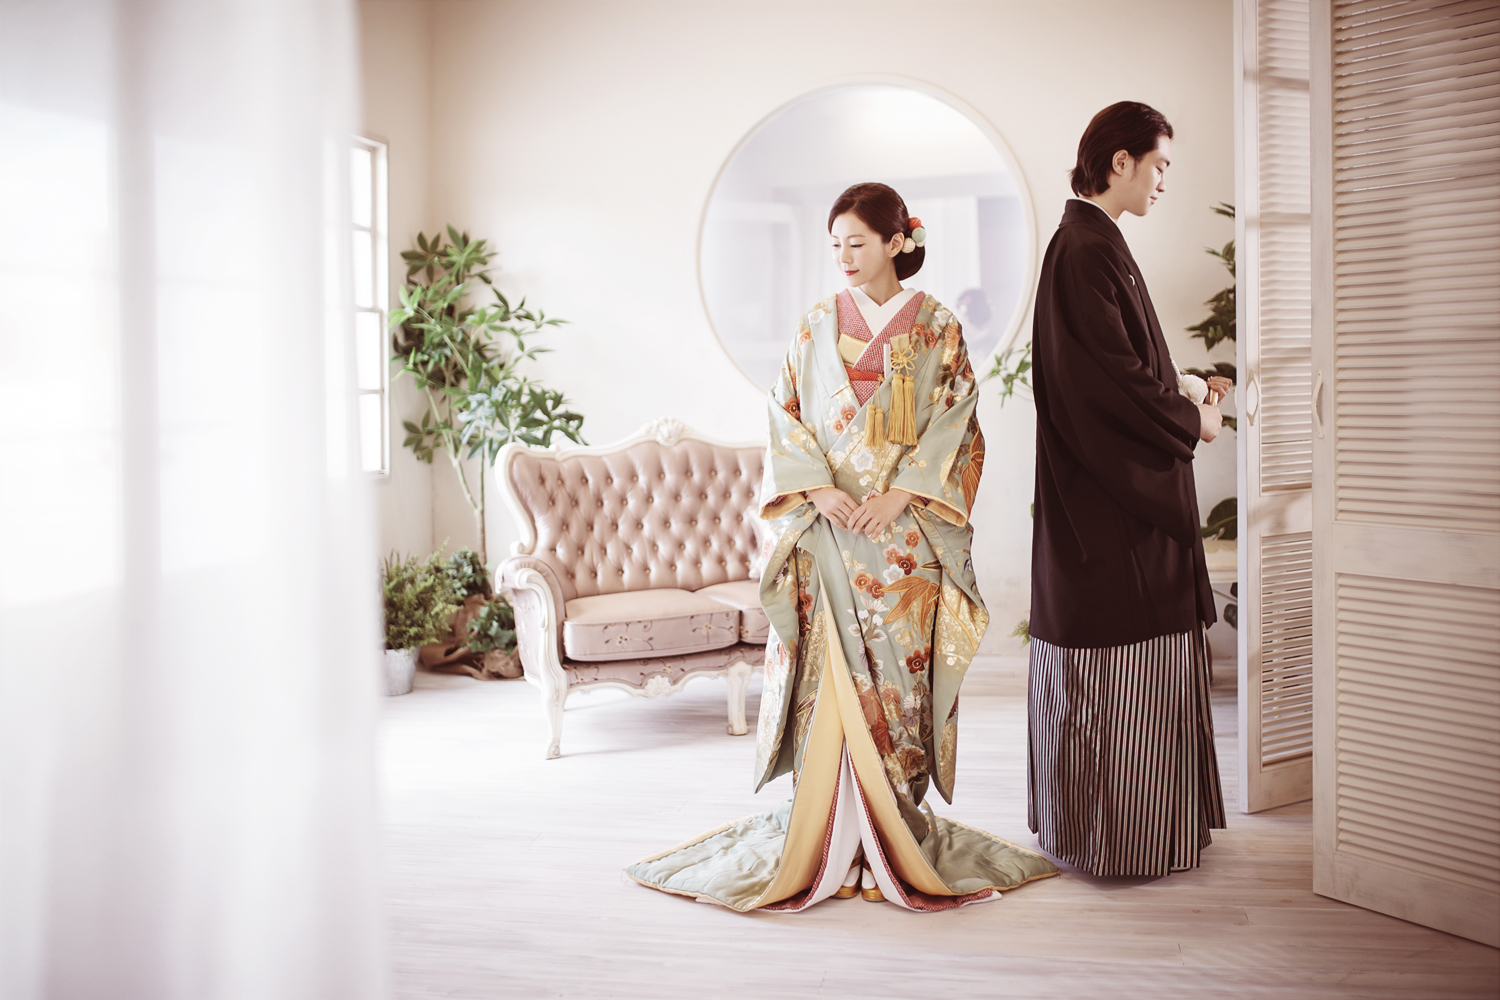 フォトウェディング専門のブライダルフォトスタジオLUXE MATSUYAMA–リュクス松山の色打掛と紋付袴の新郎新婦と大正ロマンな一枚